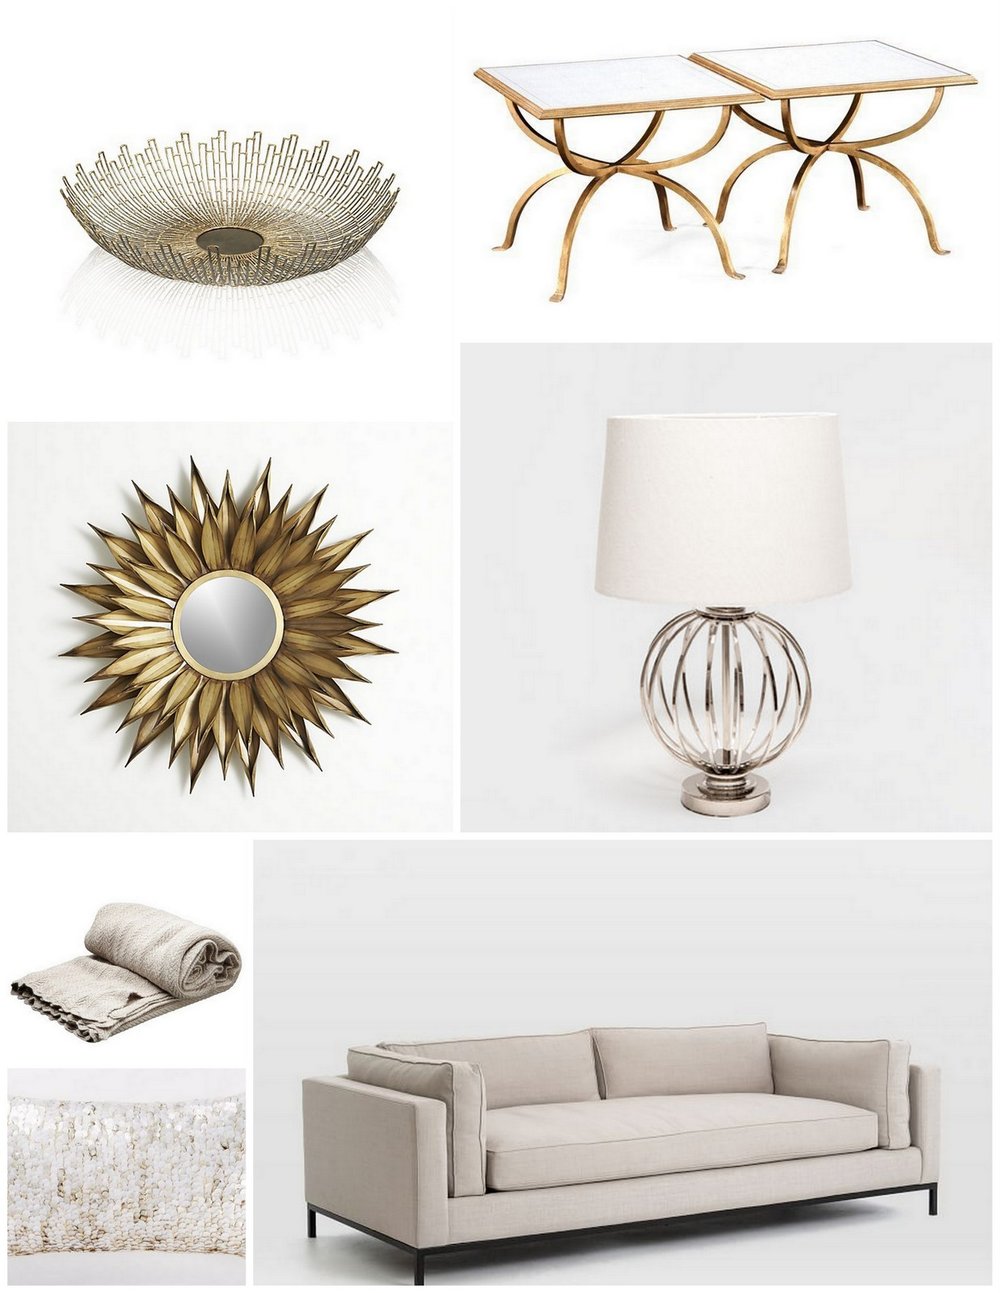 Chanel Inspired Living Room